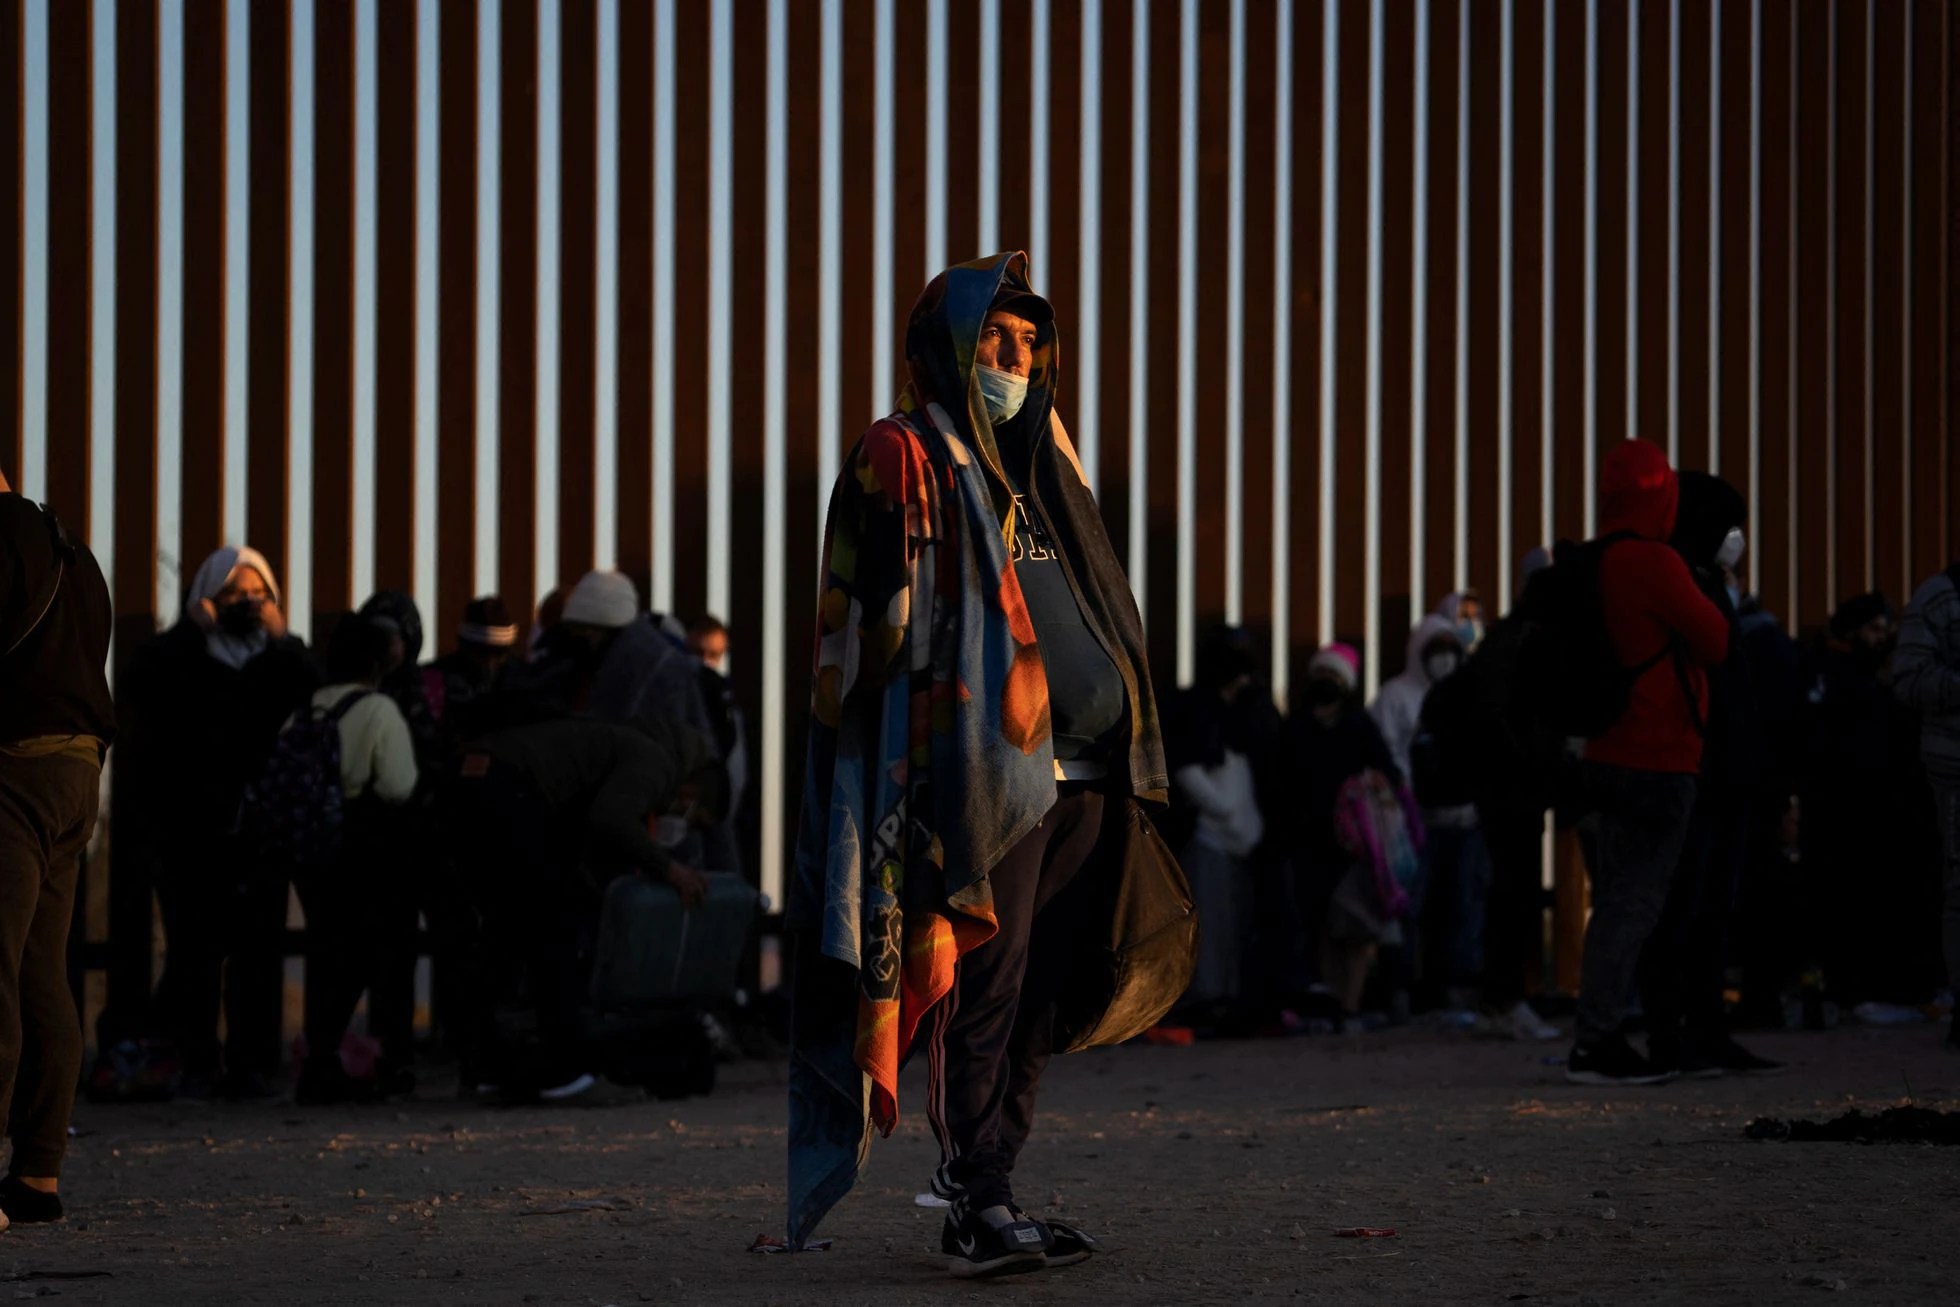 El País: América levanta muros frente a la migración venezolana